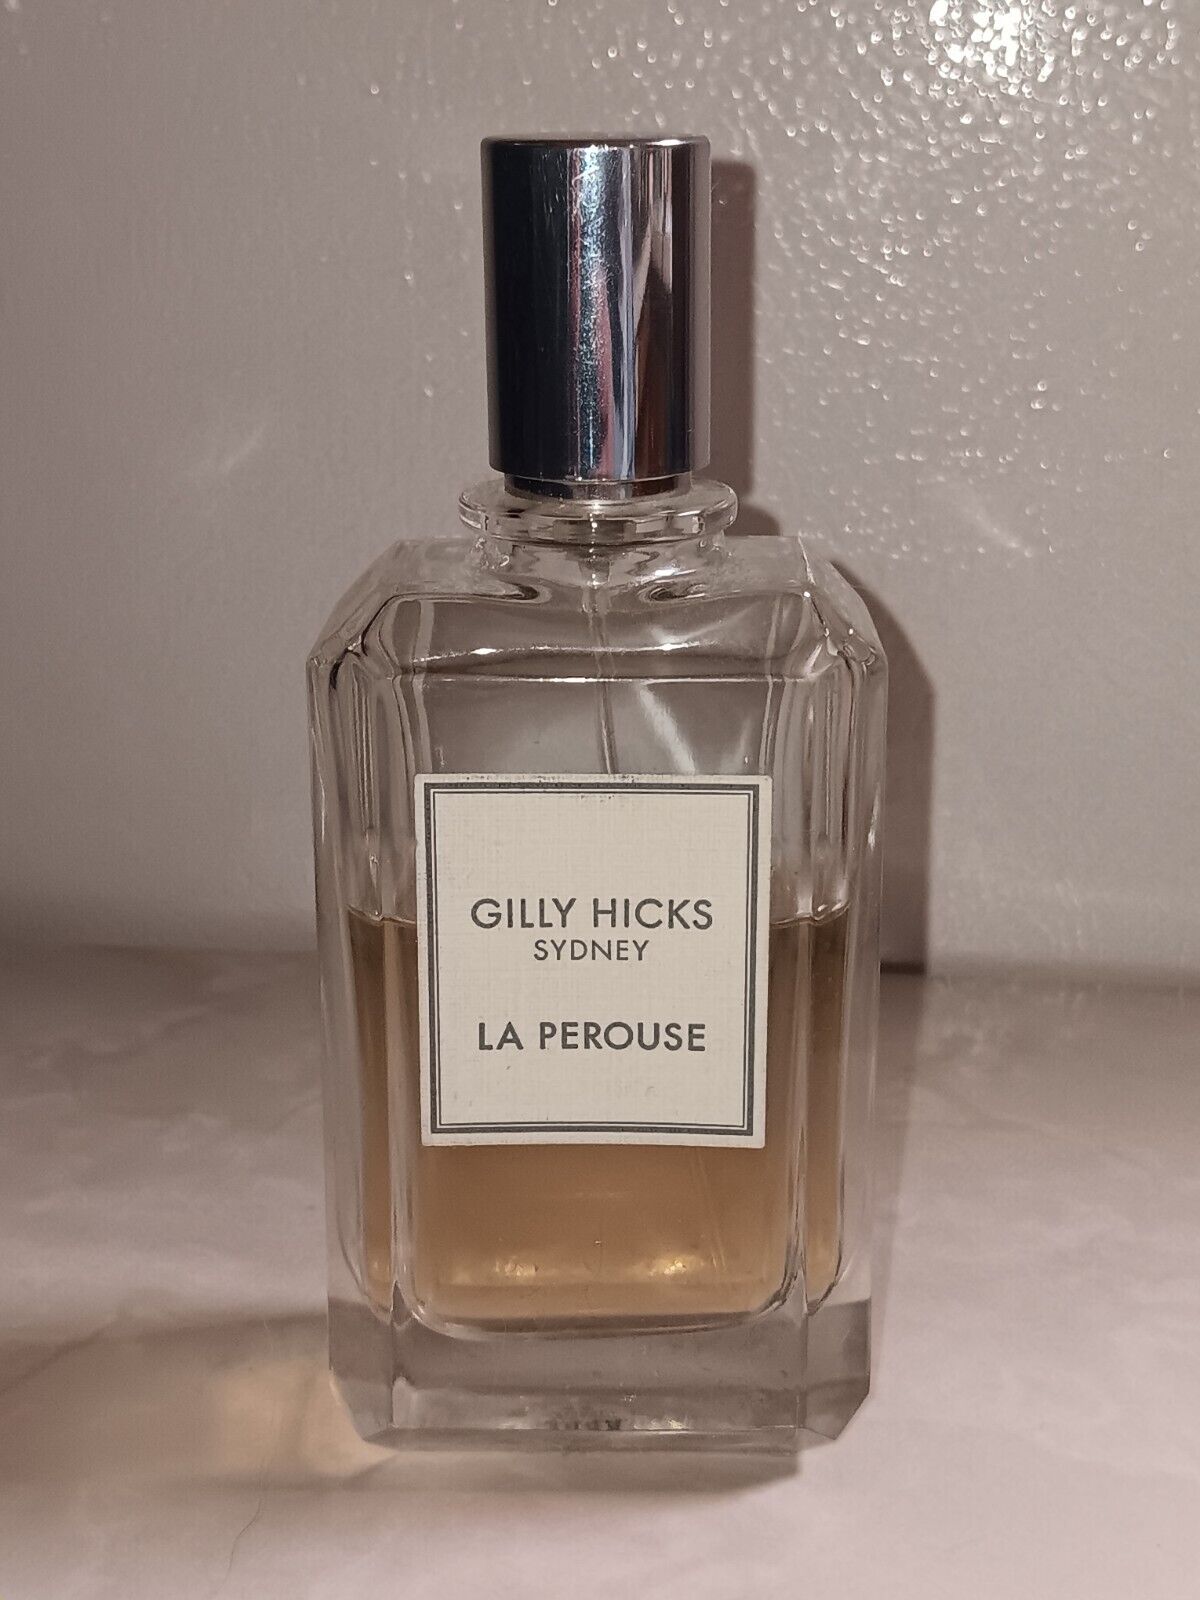 Gilly Hicks Sydney La Perouse 2.5oz Eau de Parfum